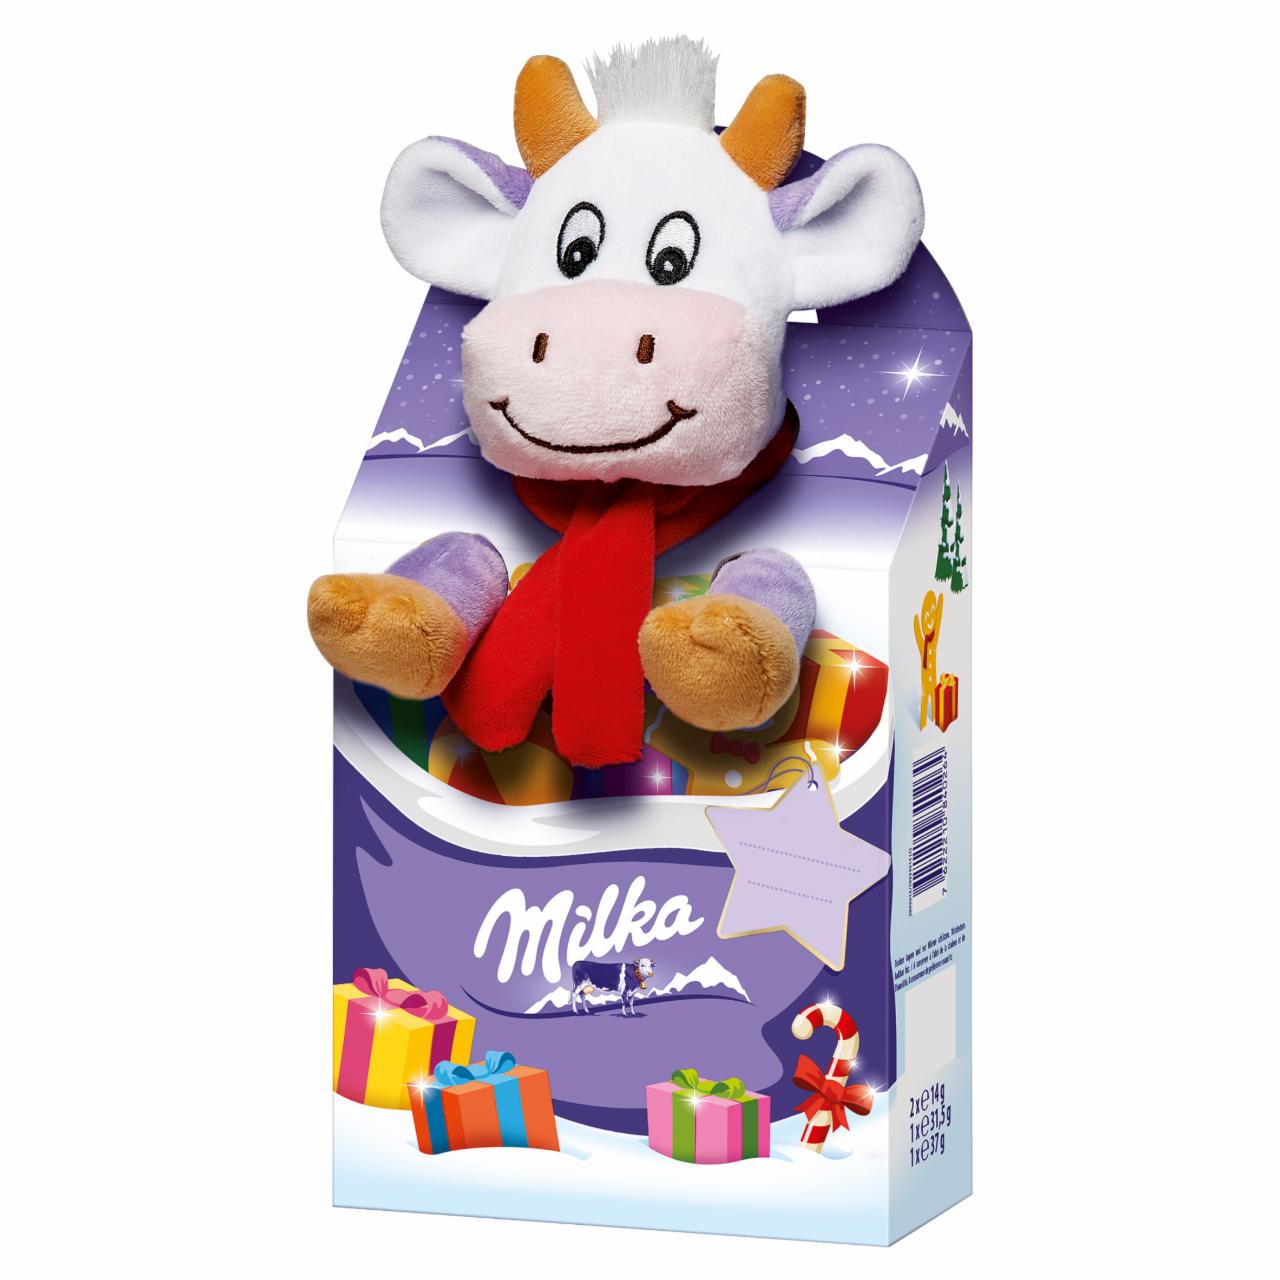 Zdjęcia - Milka Mieszanka czekolady mlecznej nadziewanej czekolady mlecznej i draży + pluszowa zabawka